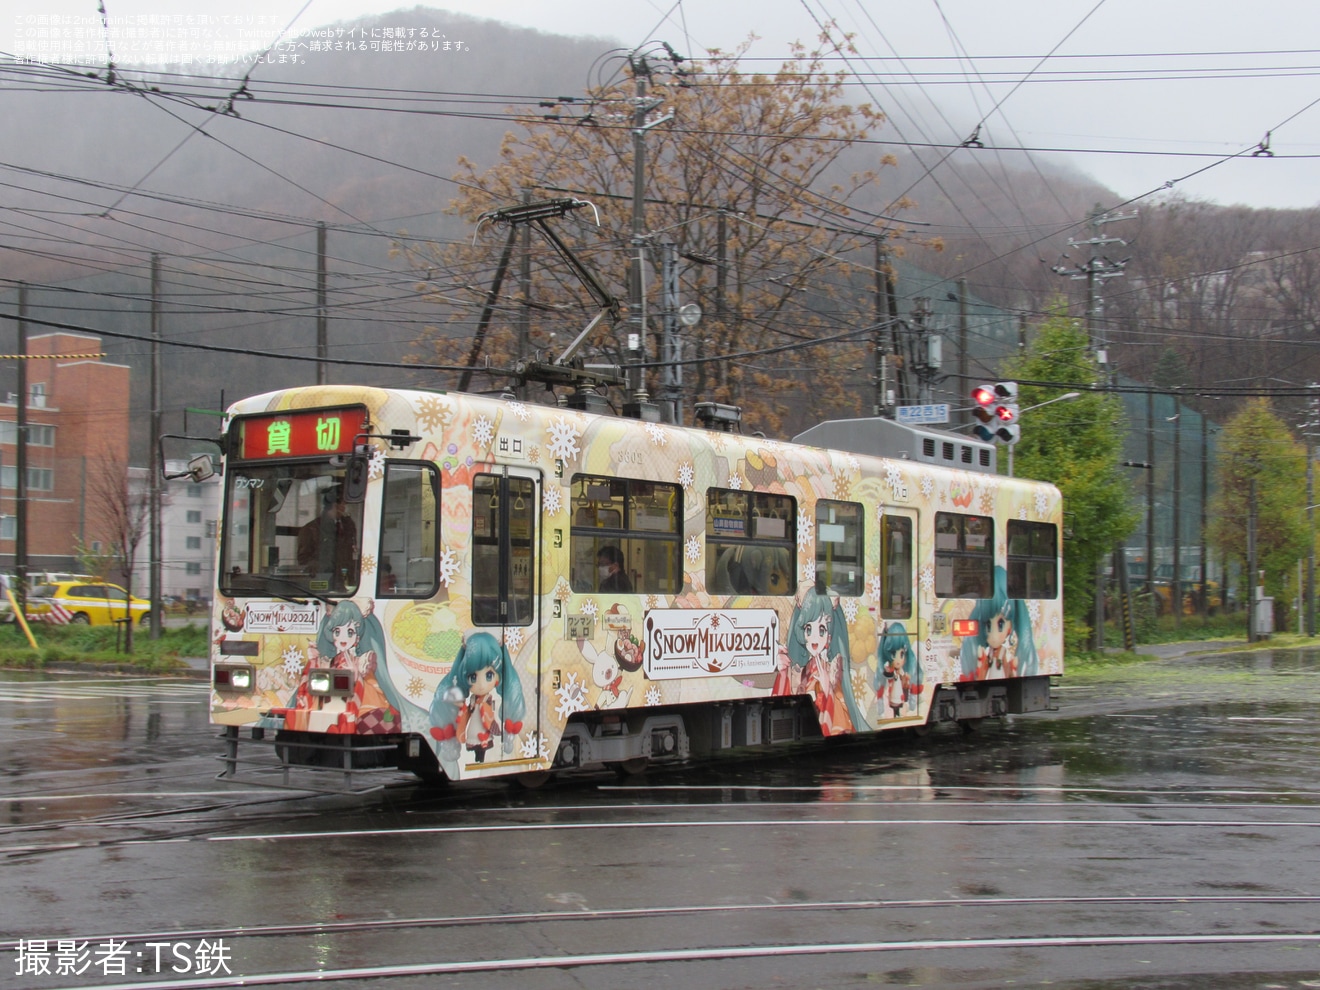 【札幌市交】雪ミク電車2024が試運転の拡大写真